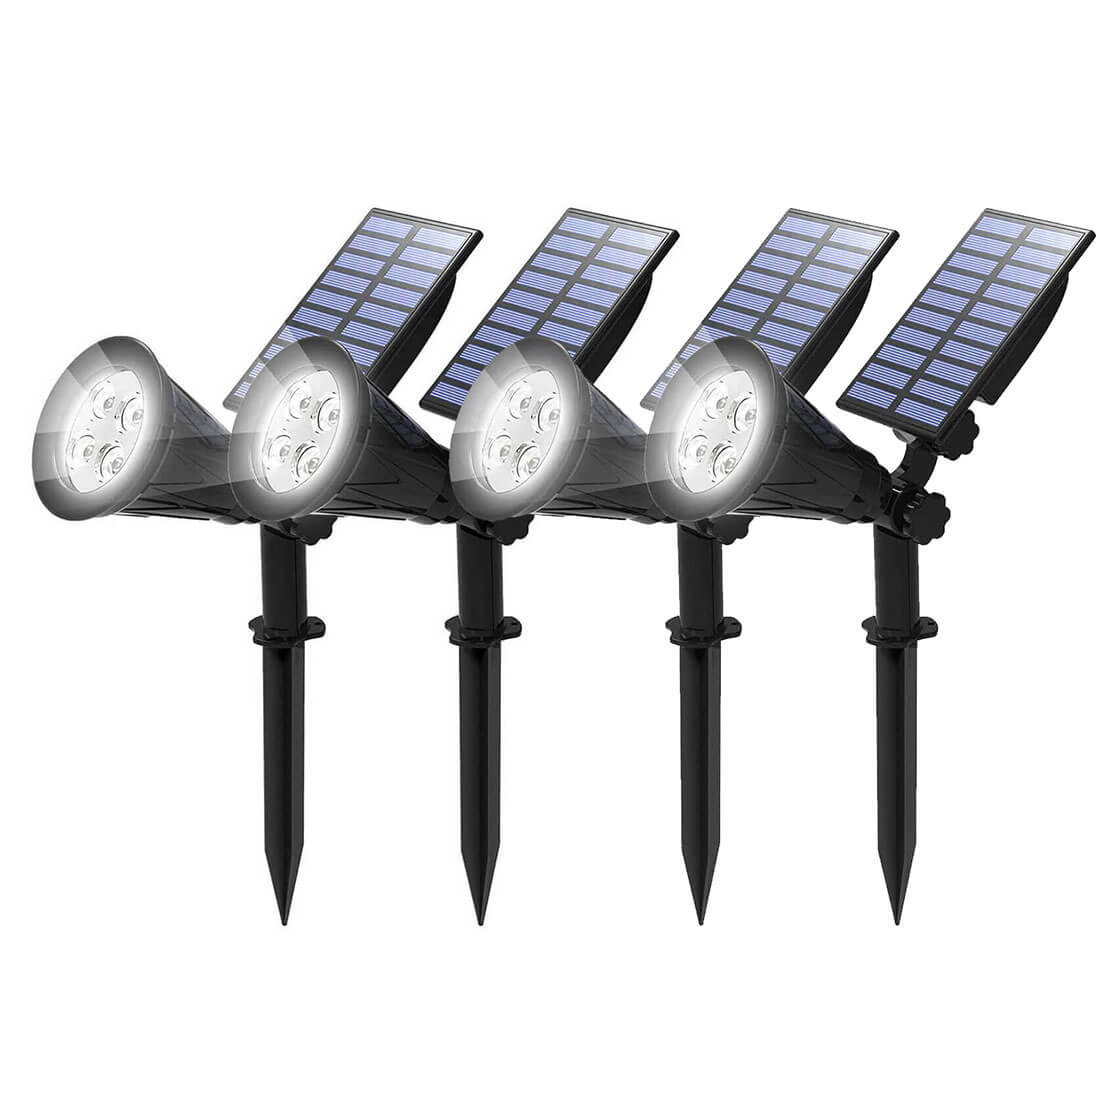 T-SUN White 4 LEDs Solar Spot lights 4 pack